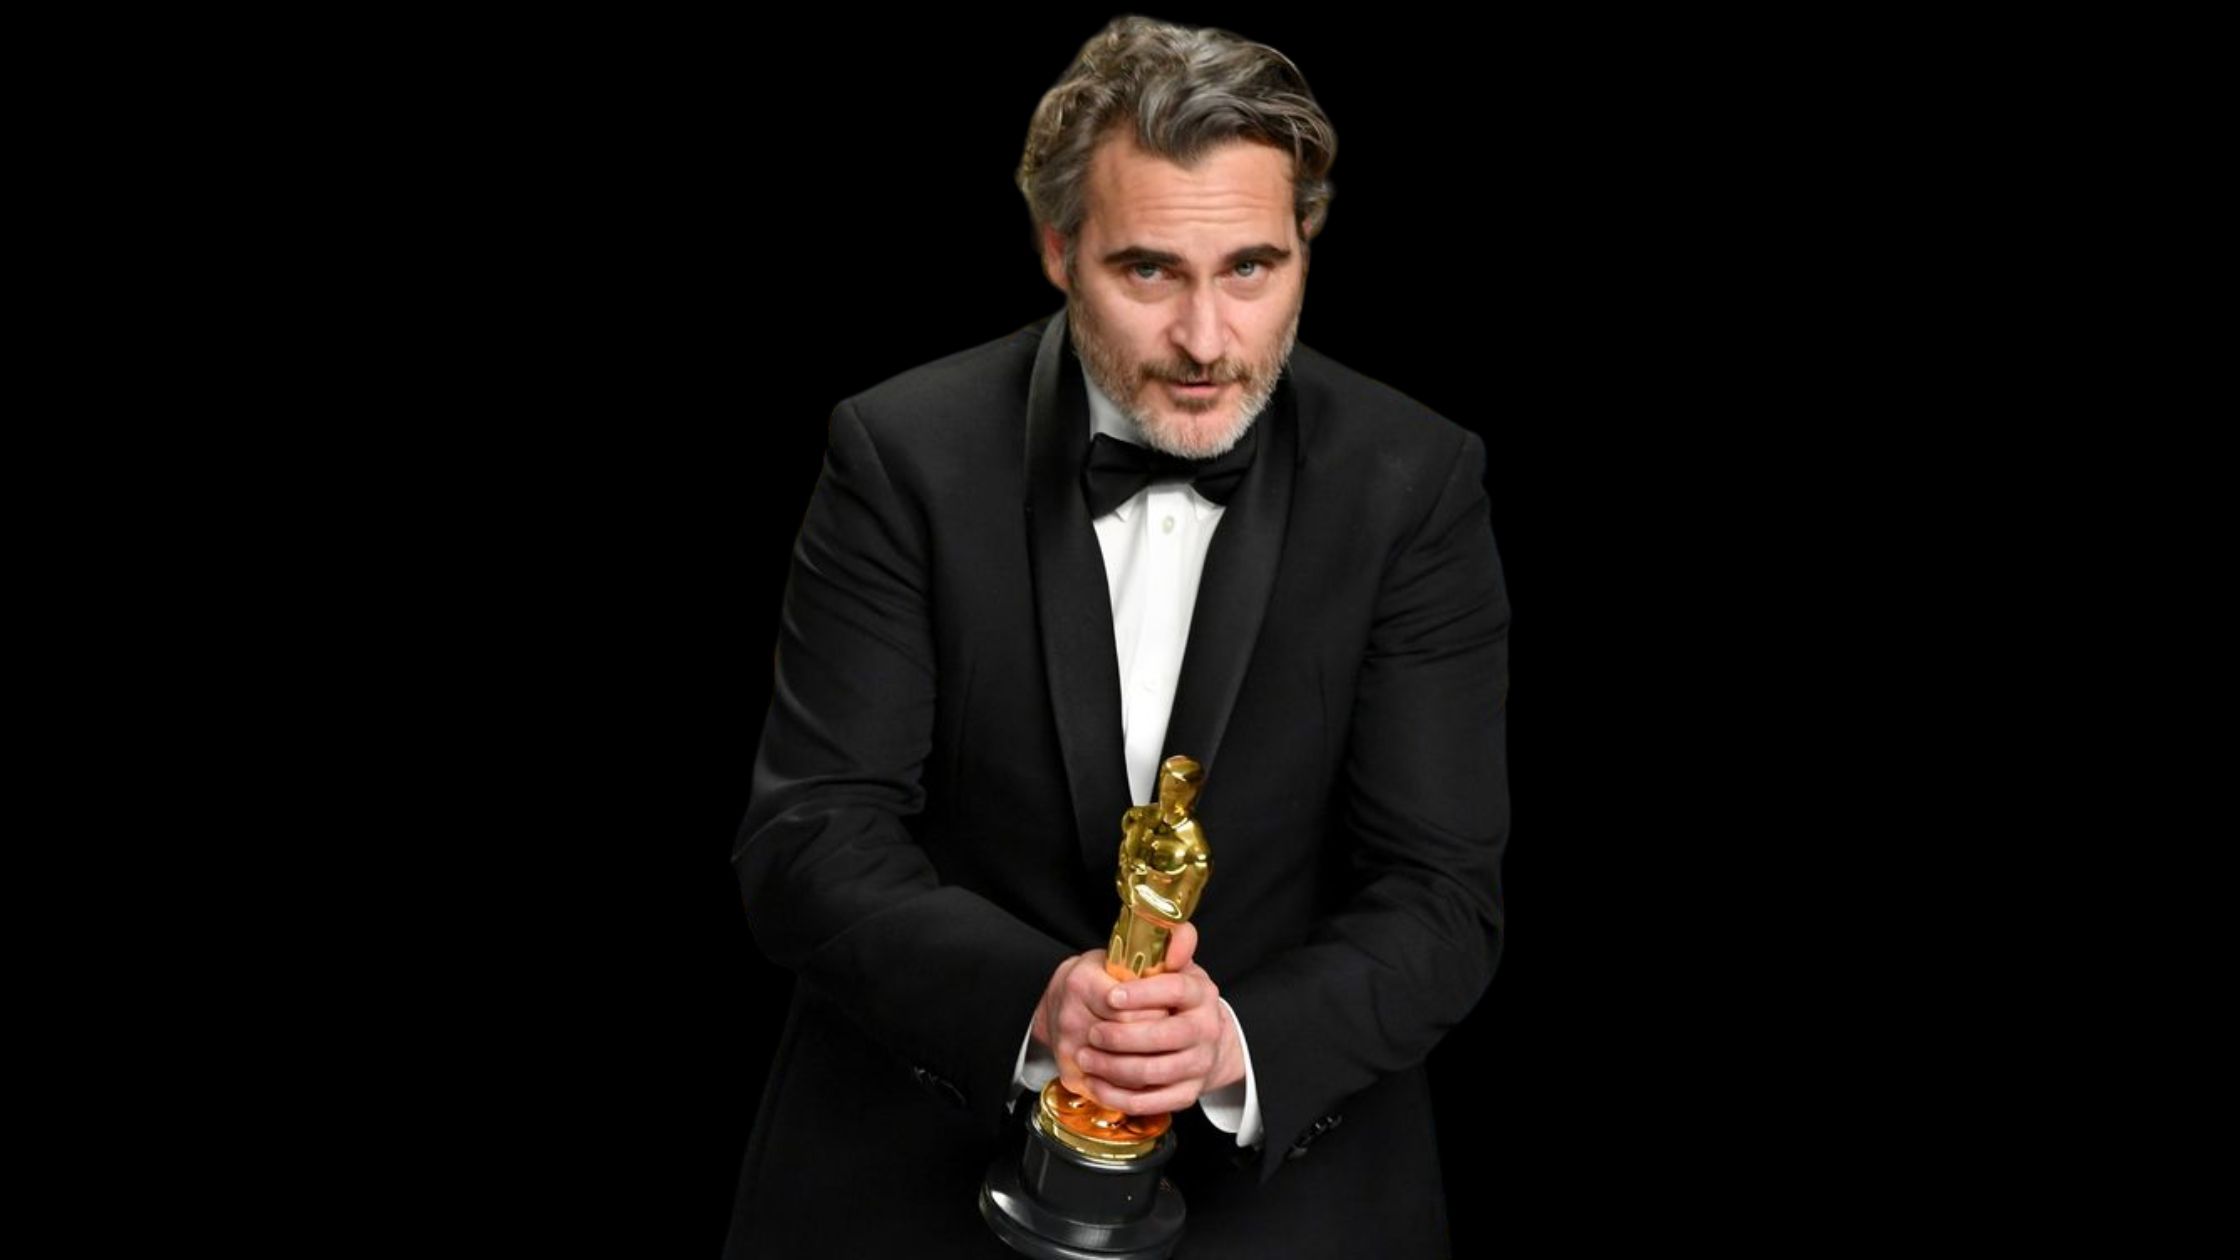 El Oscar al mejor actor en los últimos 20 años  